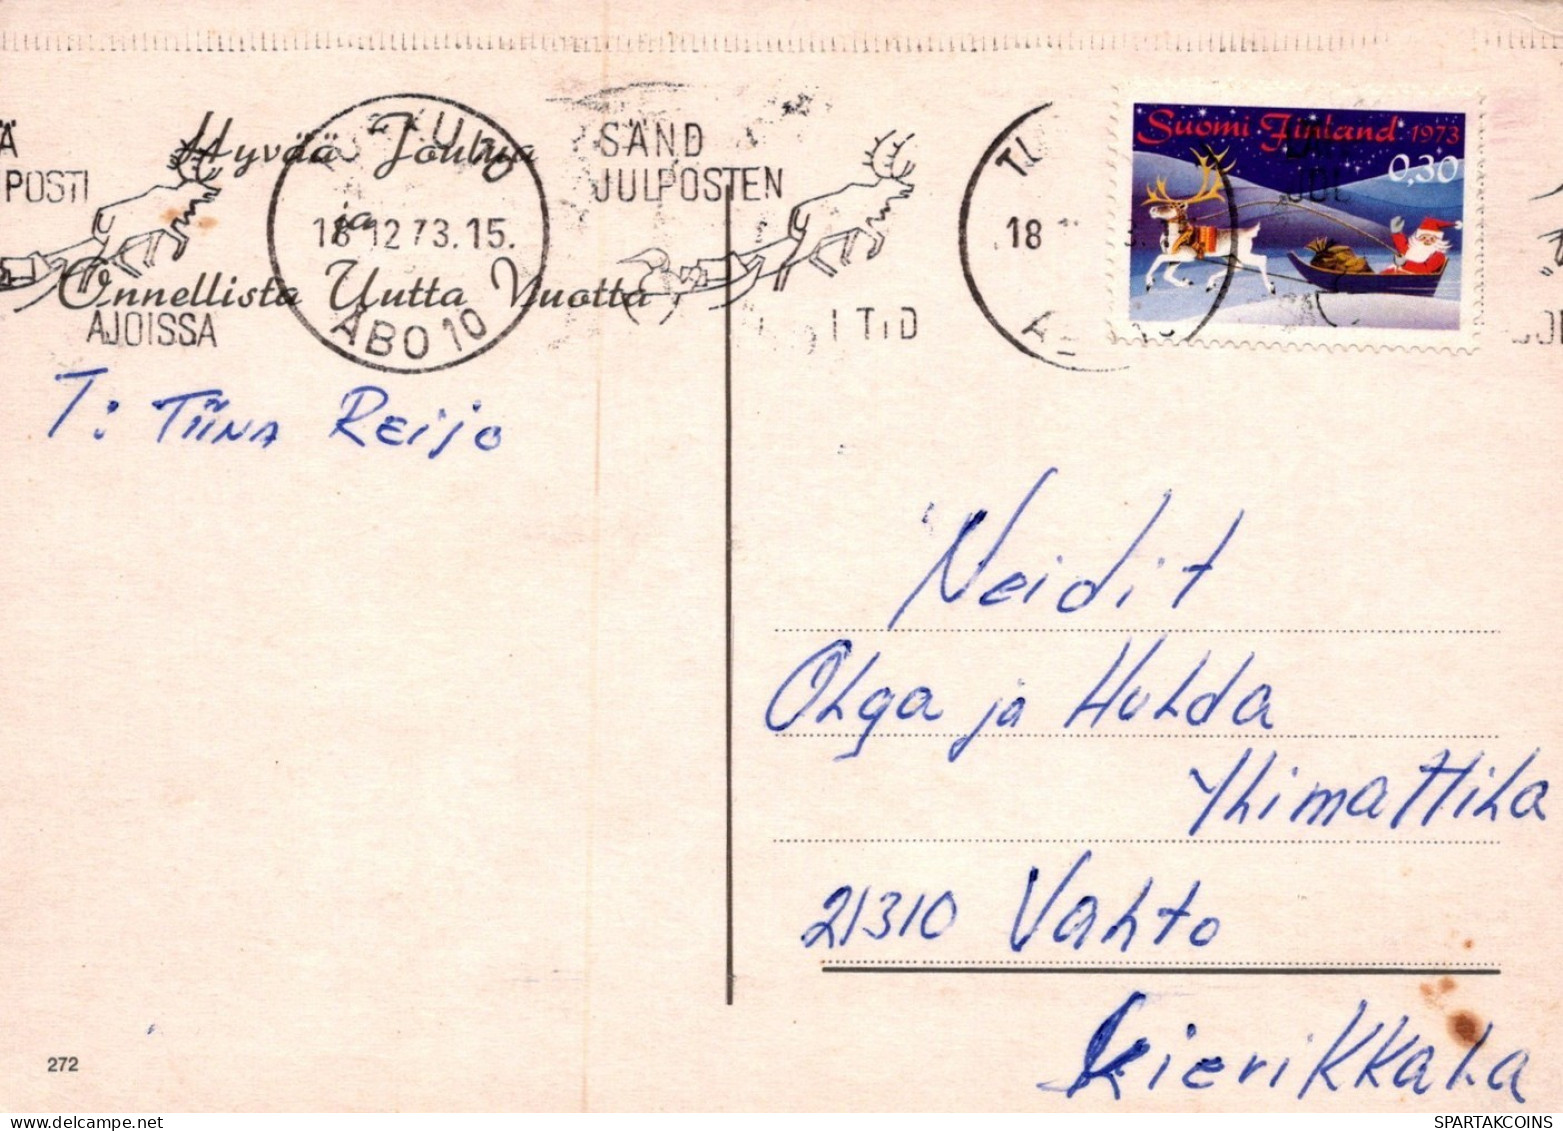 OISEAU Animaux Vintage Carte Postale CPSM #PAM924.A - Vogels